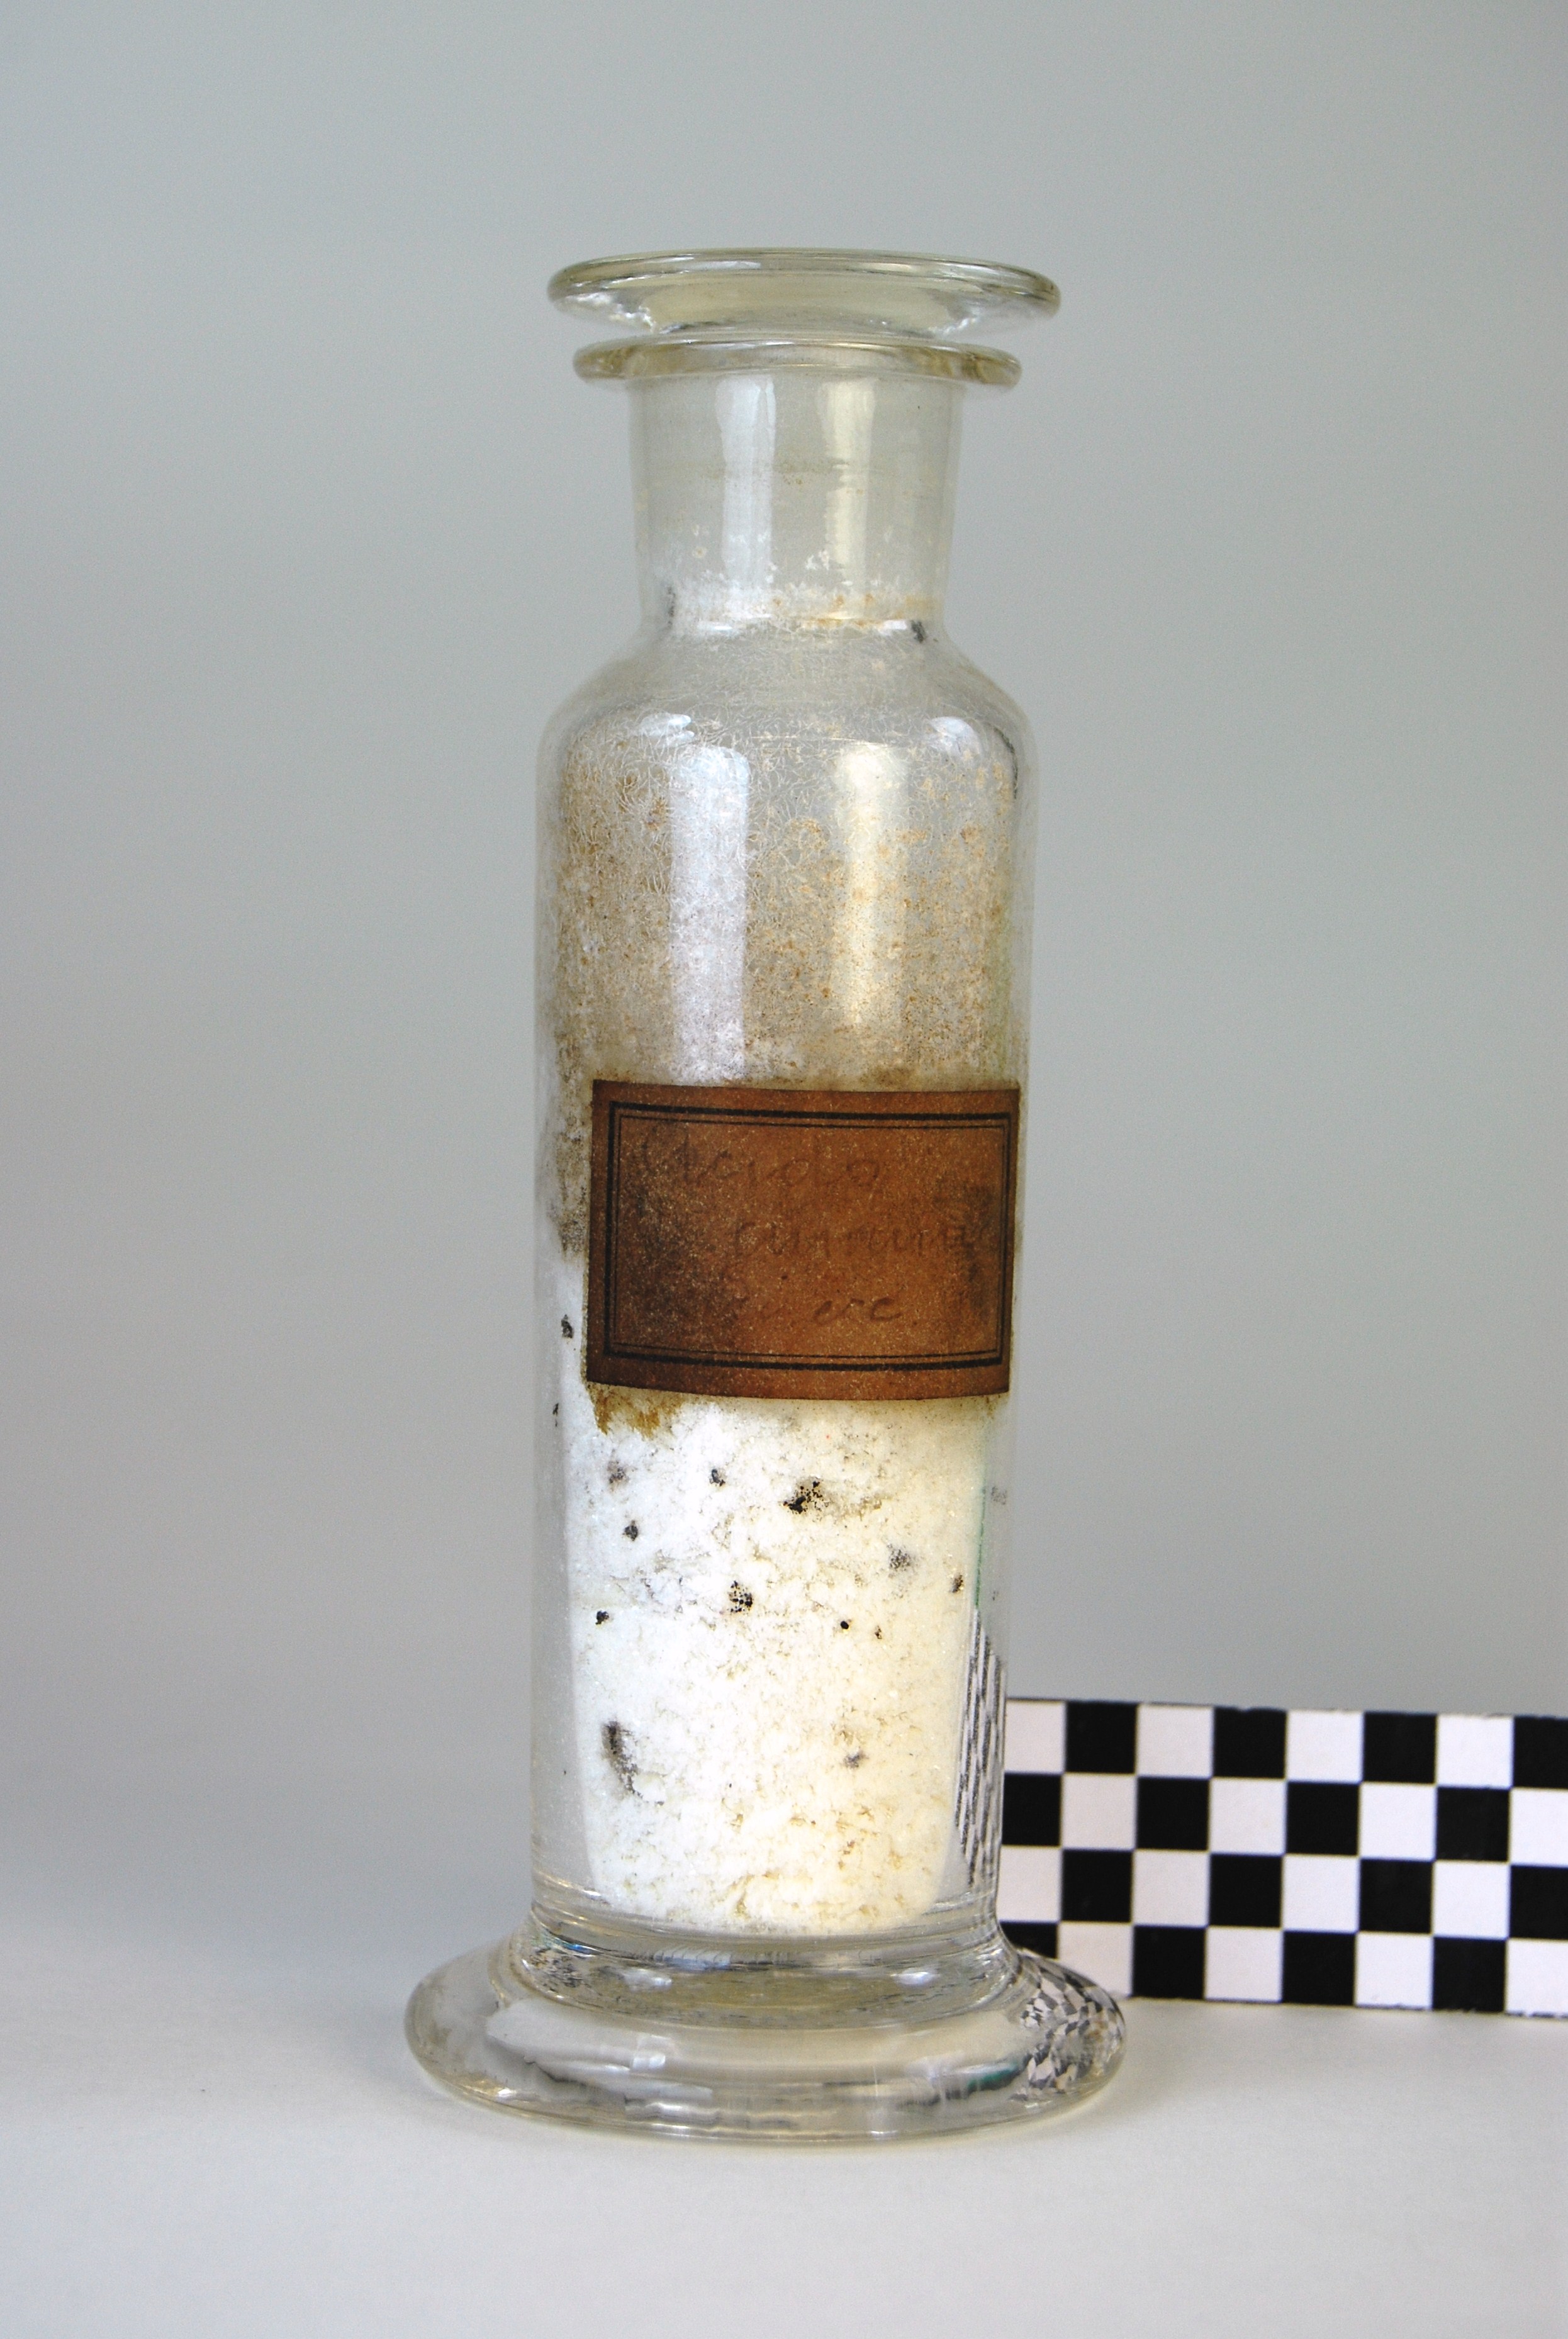 acido ammina(…) (prodotto chimico, di sintesi) di Ugo Schiff (laboratorio) - scuola chimica fiorentina (metà/ inizio XIX/ XX)